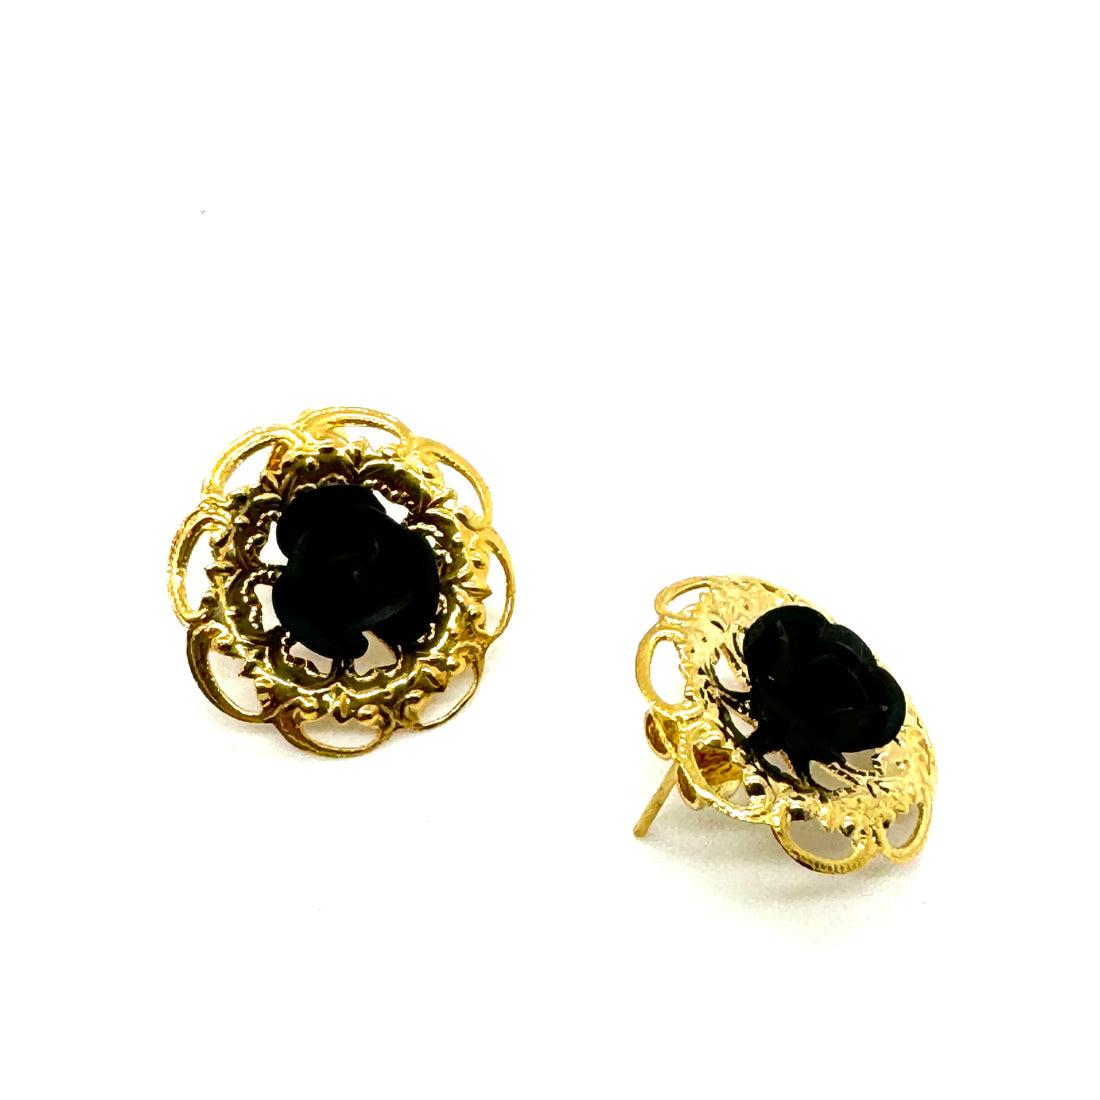 Gold Filigree &amp; Black Rose Stud Earrings - Kooky Deadstock Earrings *Final Sale